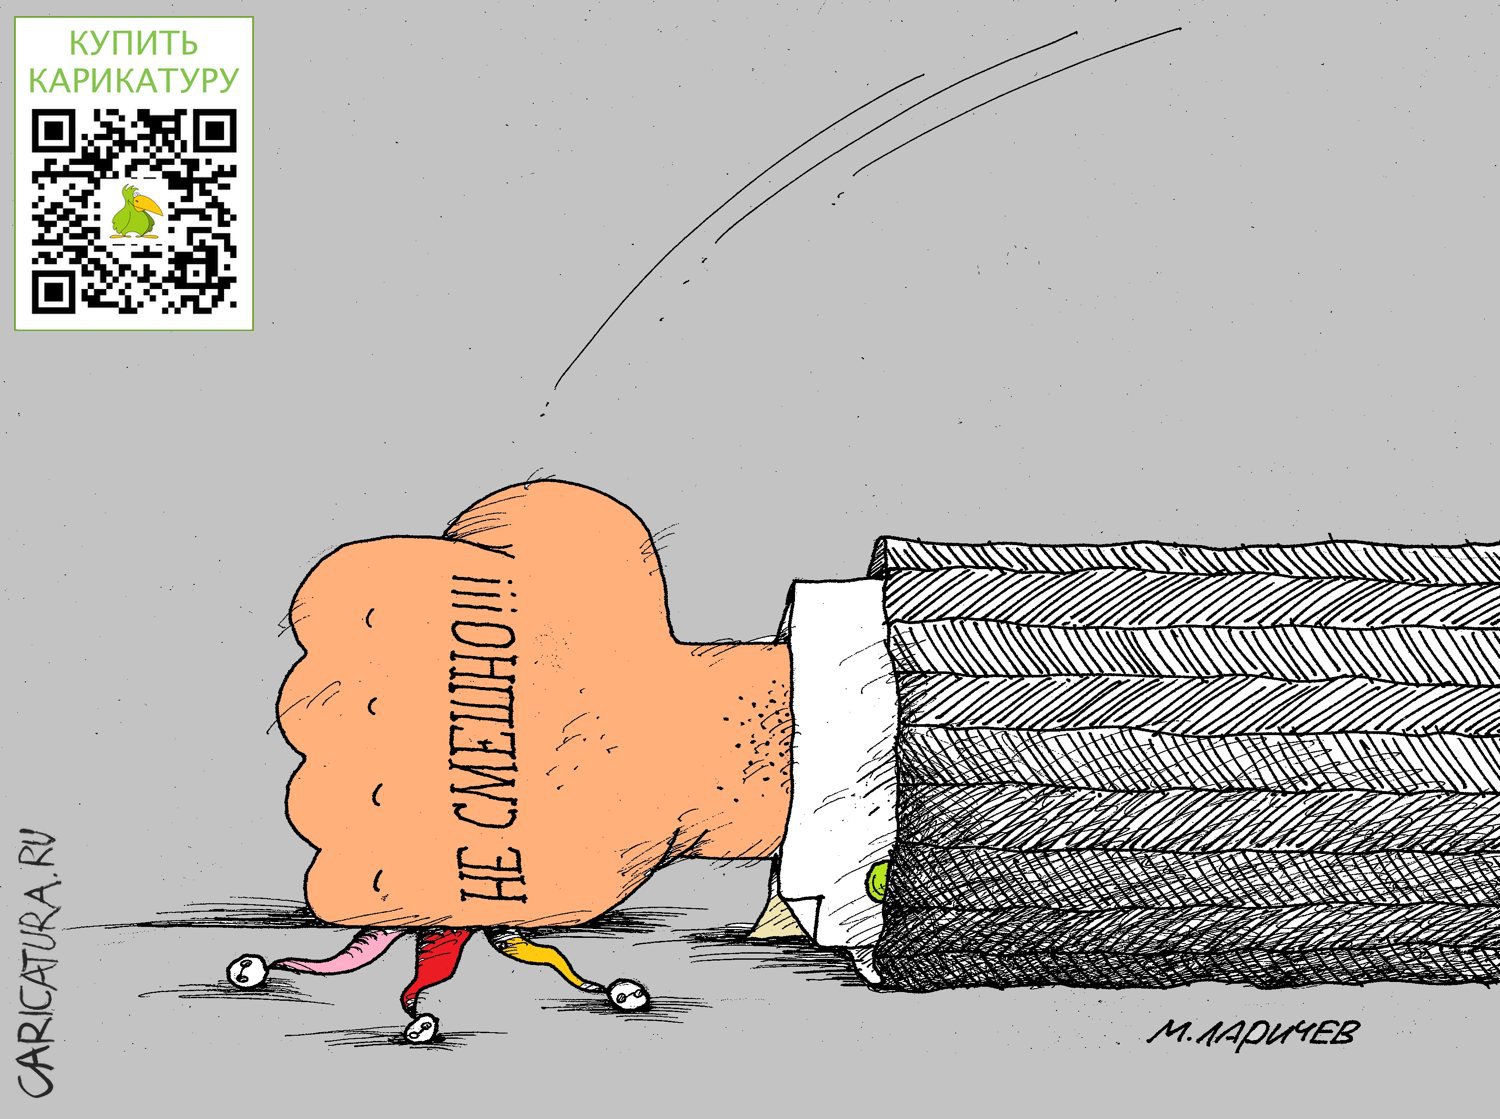 Карикатура "Смех", Михаил Ларичев